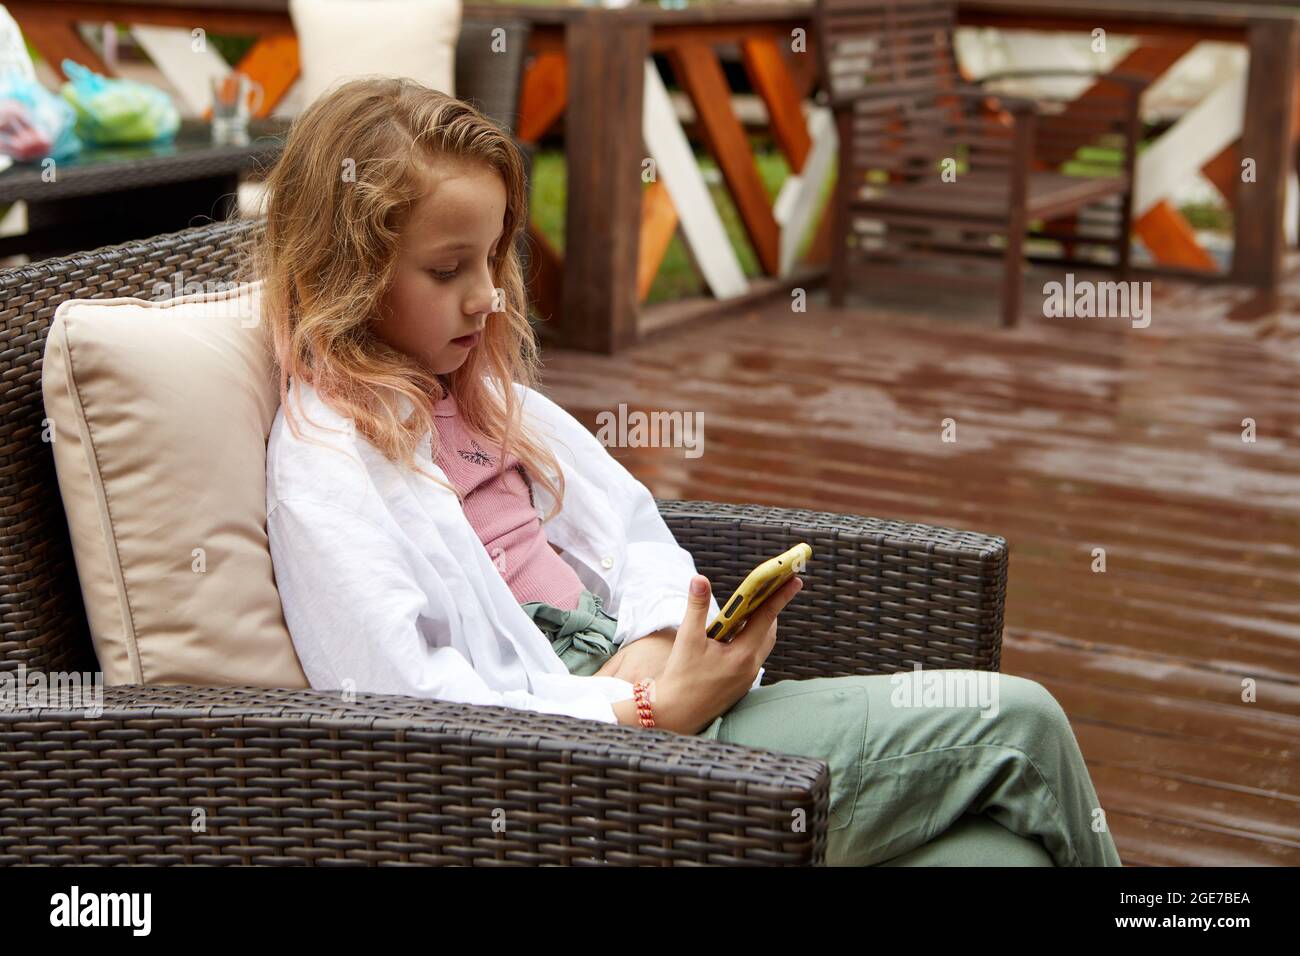 Presteen ragazza in vestiti casual appoggiata sul cuscino e guardando video sul cellulare mentre si siede sulla poltrona di vimini sulla terrazza Foto Stock